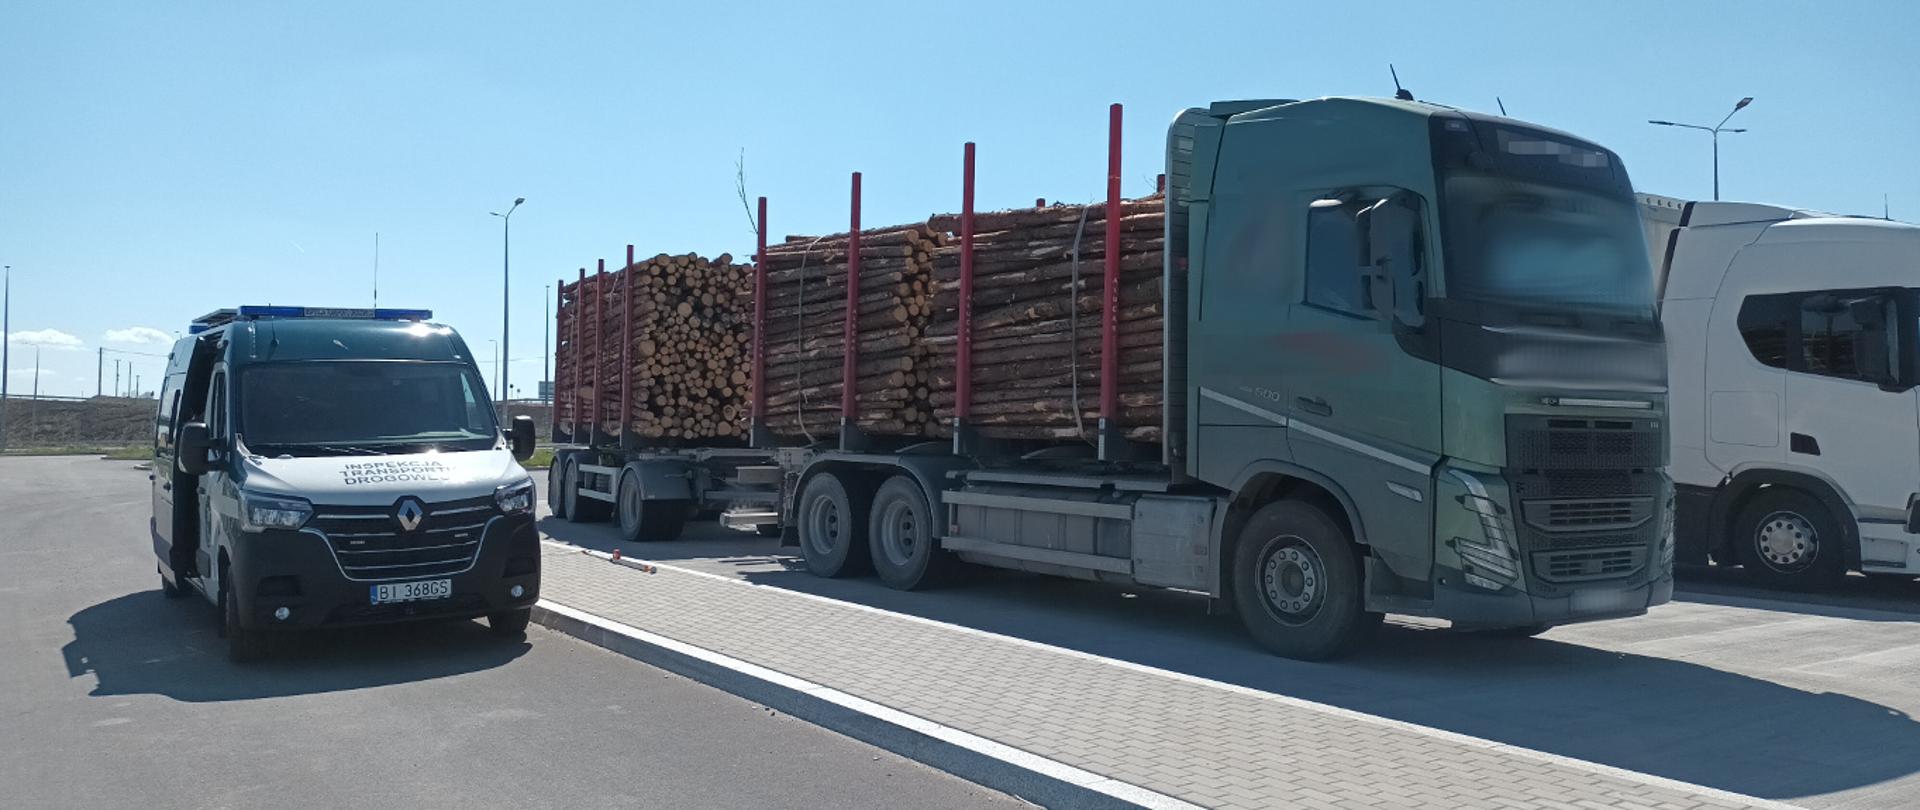 Ciężarówka załadowana kłodami drewna stoi obok radiowozu ITD